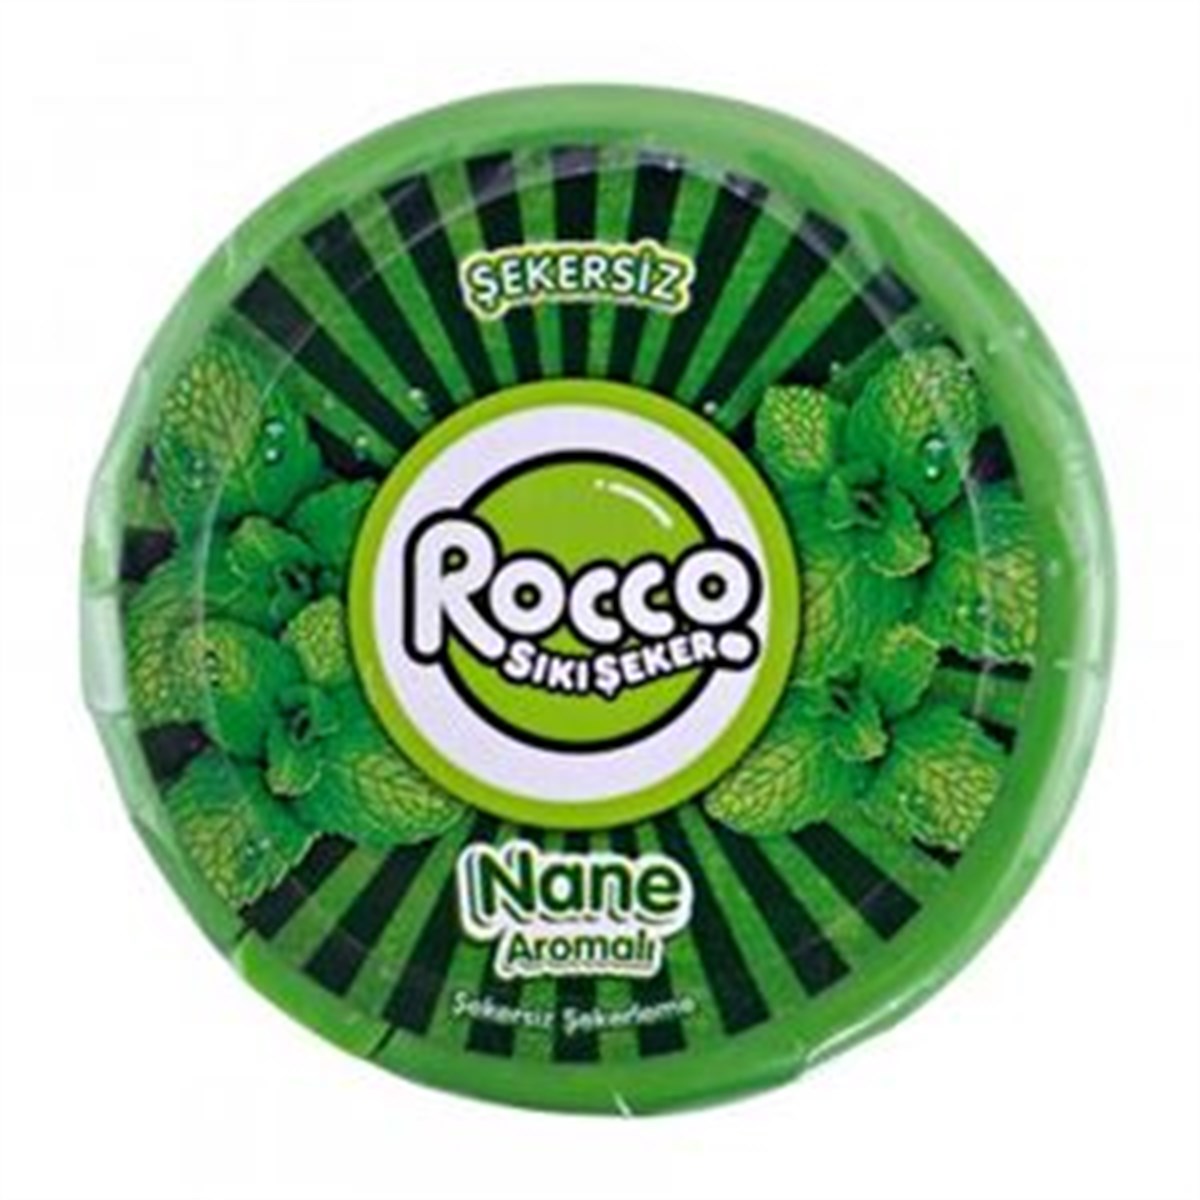 Rocco Sıkı Şeker Draje 12 Gr. - Nane İstanbul İçi Online Siparişle Kapında  - Üçler Market